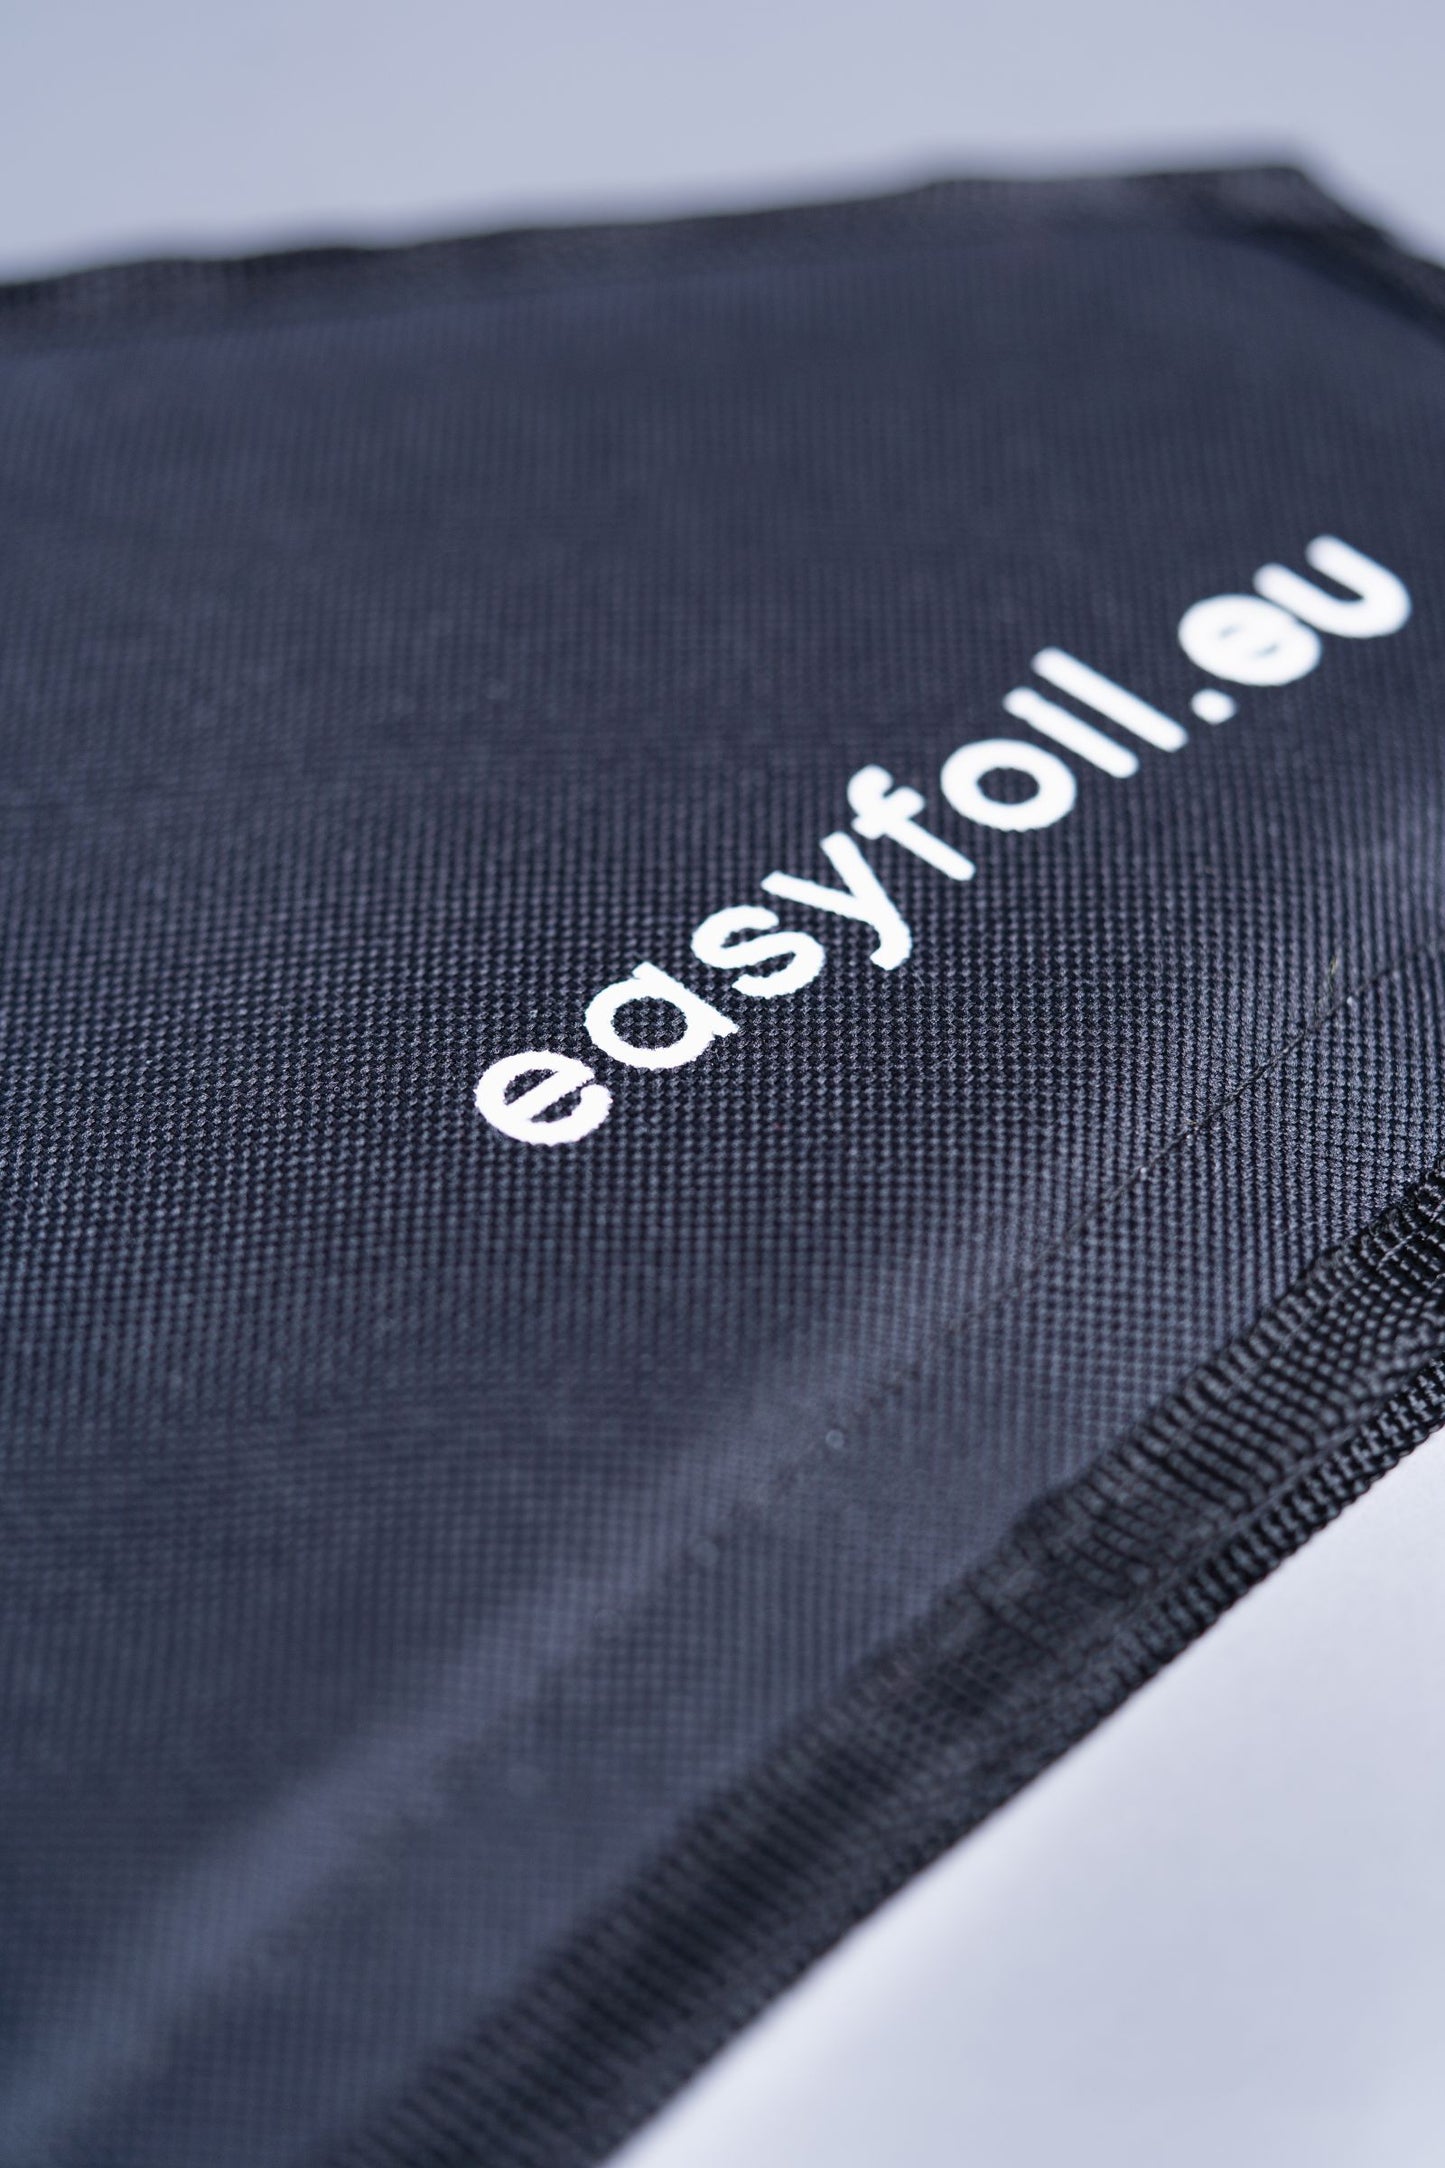 EASYFOIL Wing Bag Set